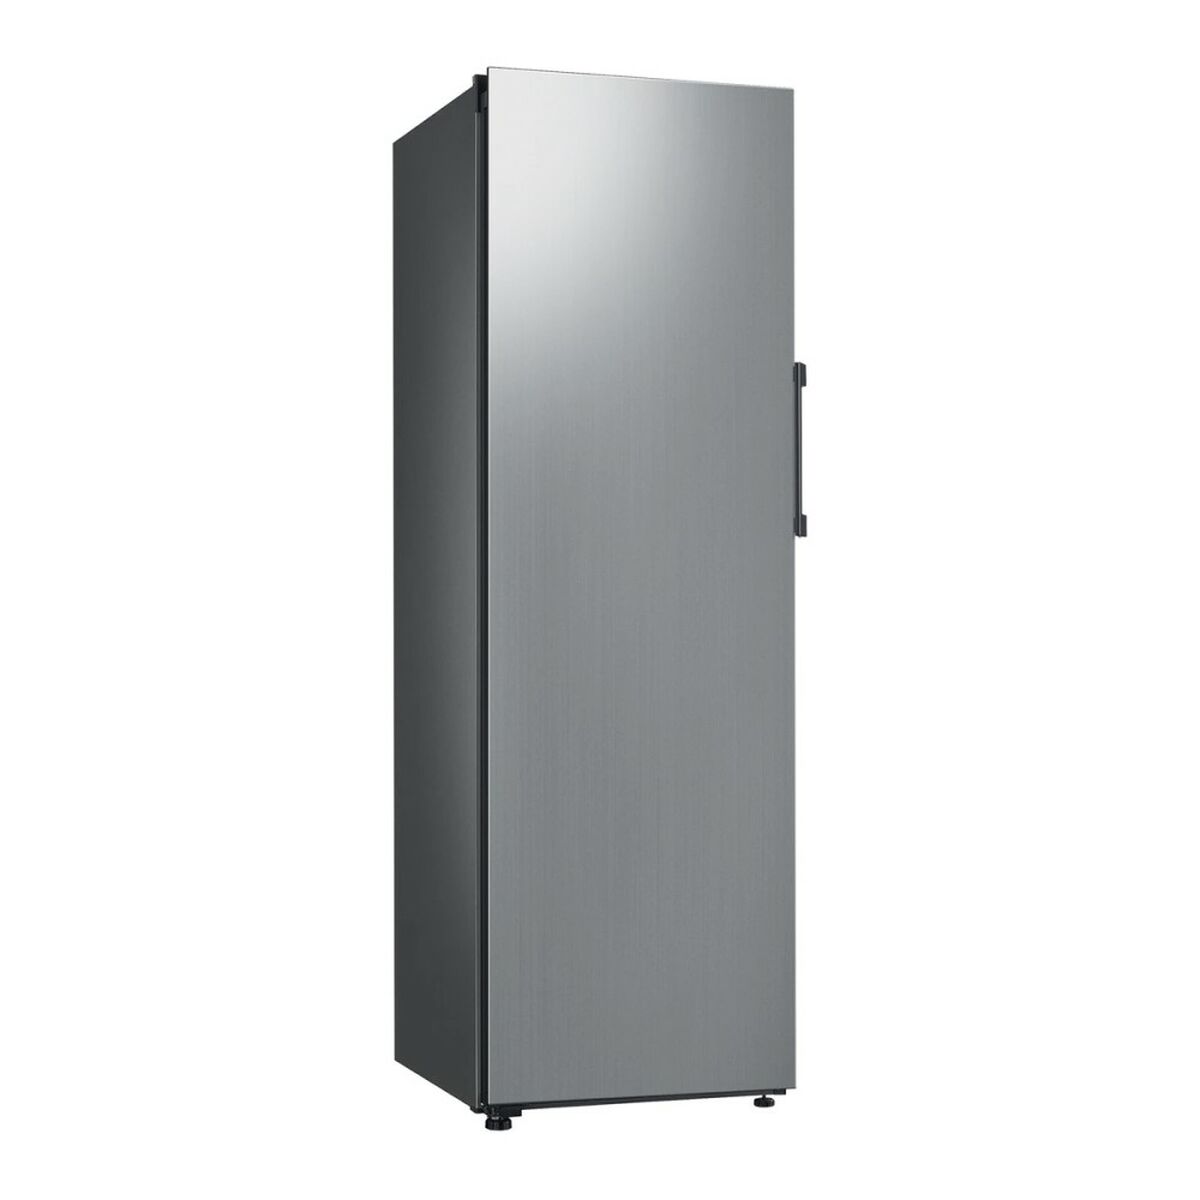 Freezer Samsung RZ32A7485S9/EF Grigio Acciaio (186 x 60 cm)